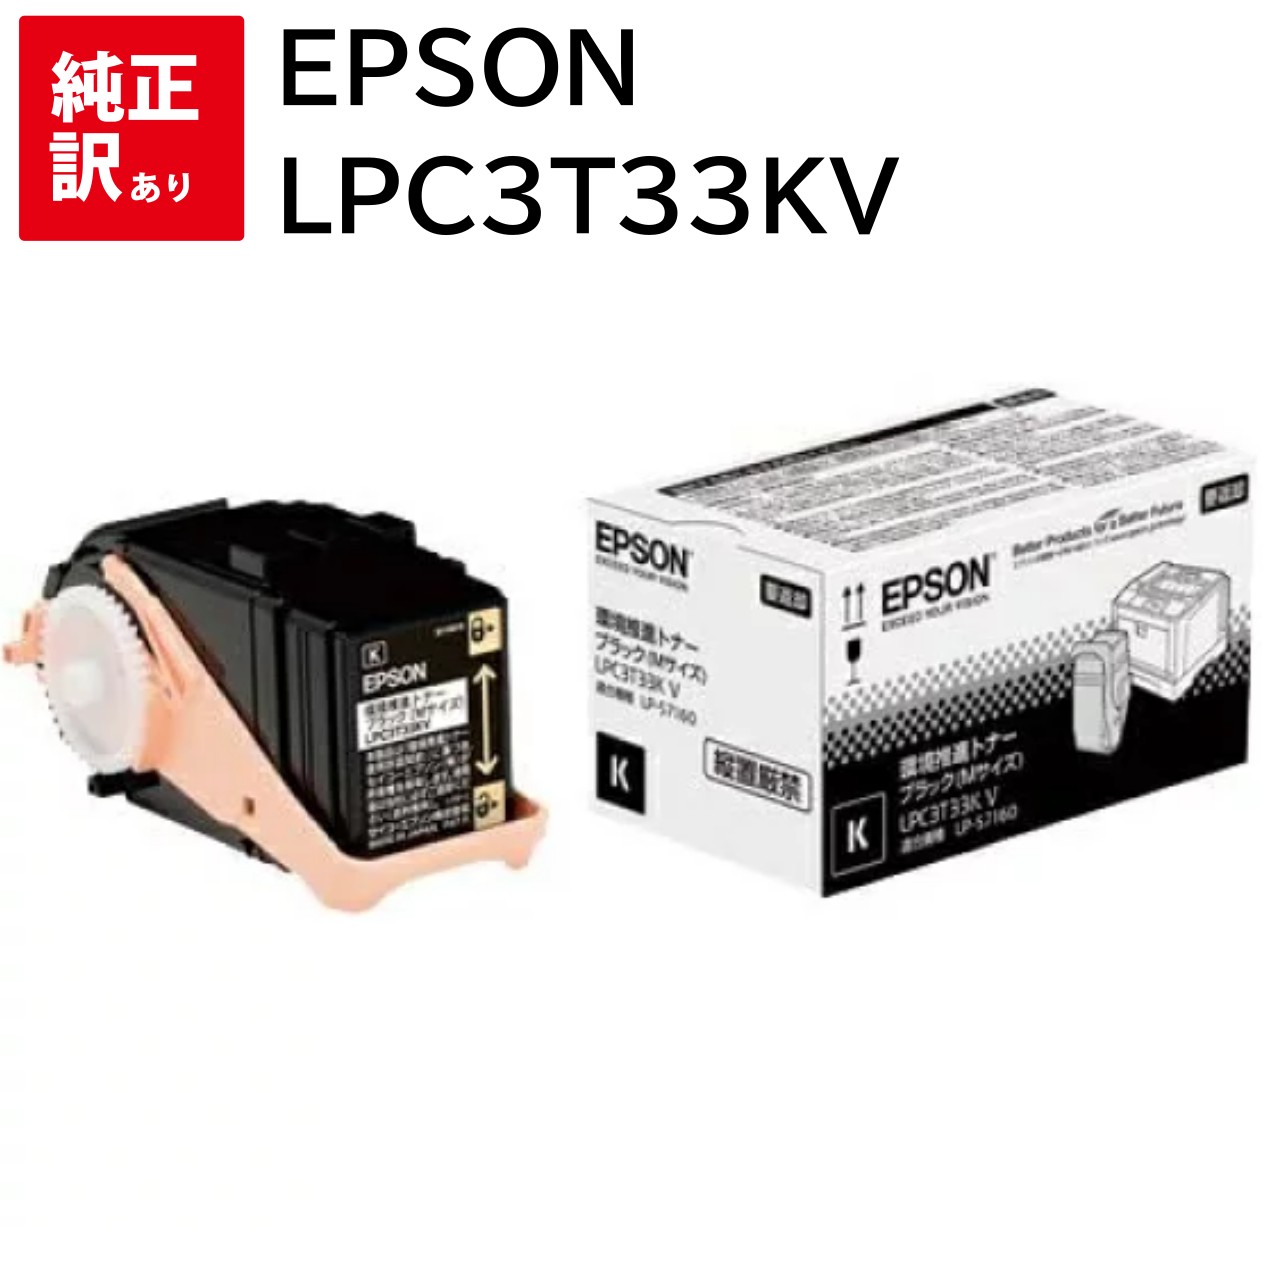 訳あり 新品 EPSON LPC3T33KV ブラック Mサイズ エプソン 環境推進 LP-S7160 LP-S7160Z LP-S71C7 トナー カートリッジ パソコン 周辺機器 PCサプライ 消耗品 プリンター メーカー 純正 送料無料 4988617219526